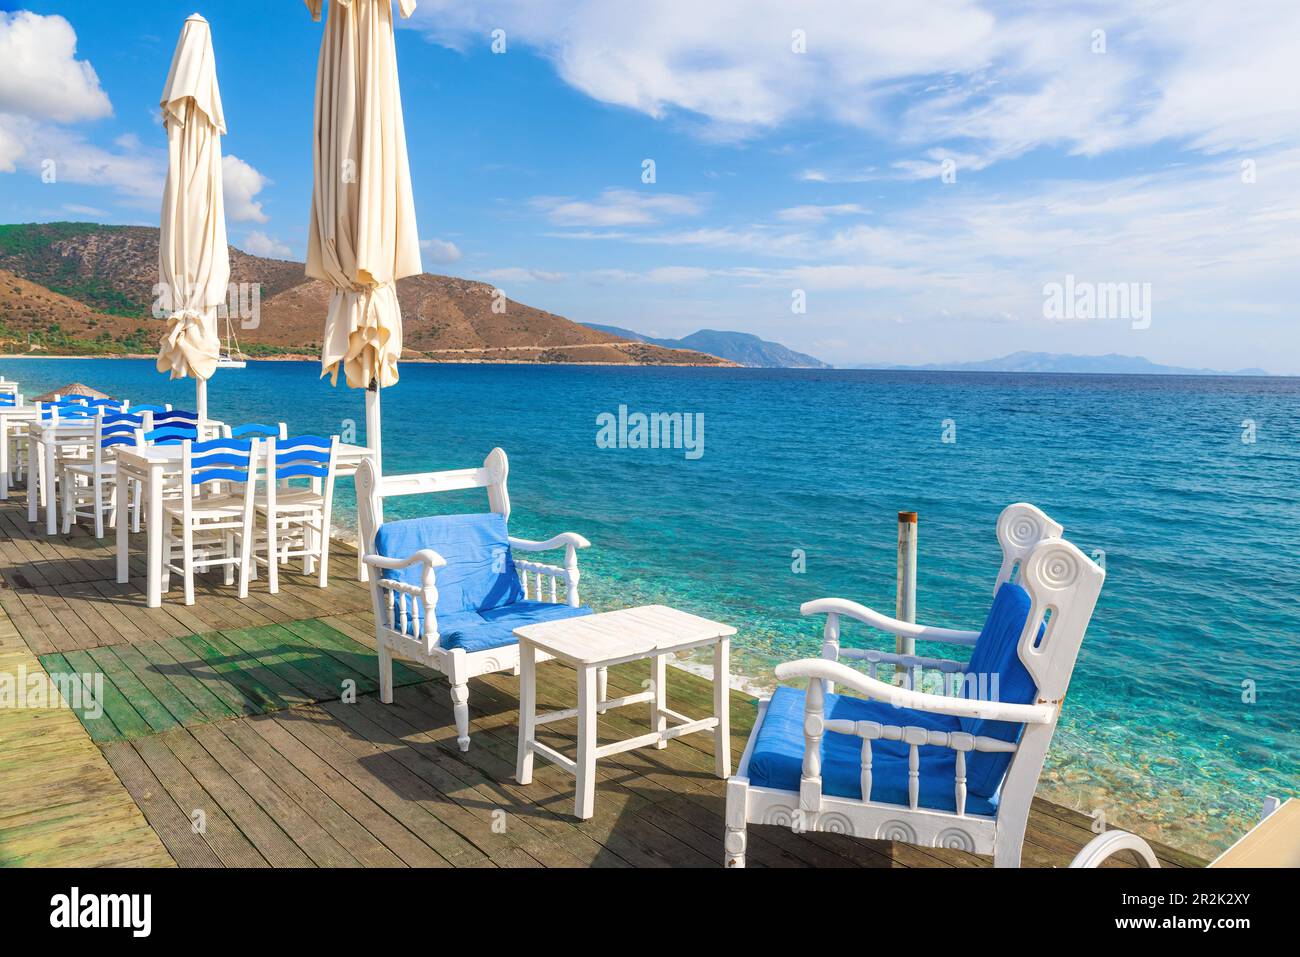 Café-terrasse avec personne sur la plage de Palamutbuku dans la péninsule de Datca, région de Mugla, Turquie sur la mer Egée. Station touristique populaire de vacances d'été Banque D'Images